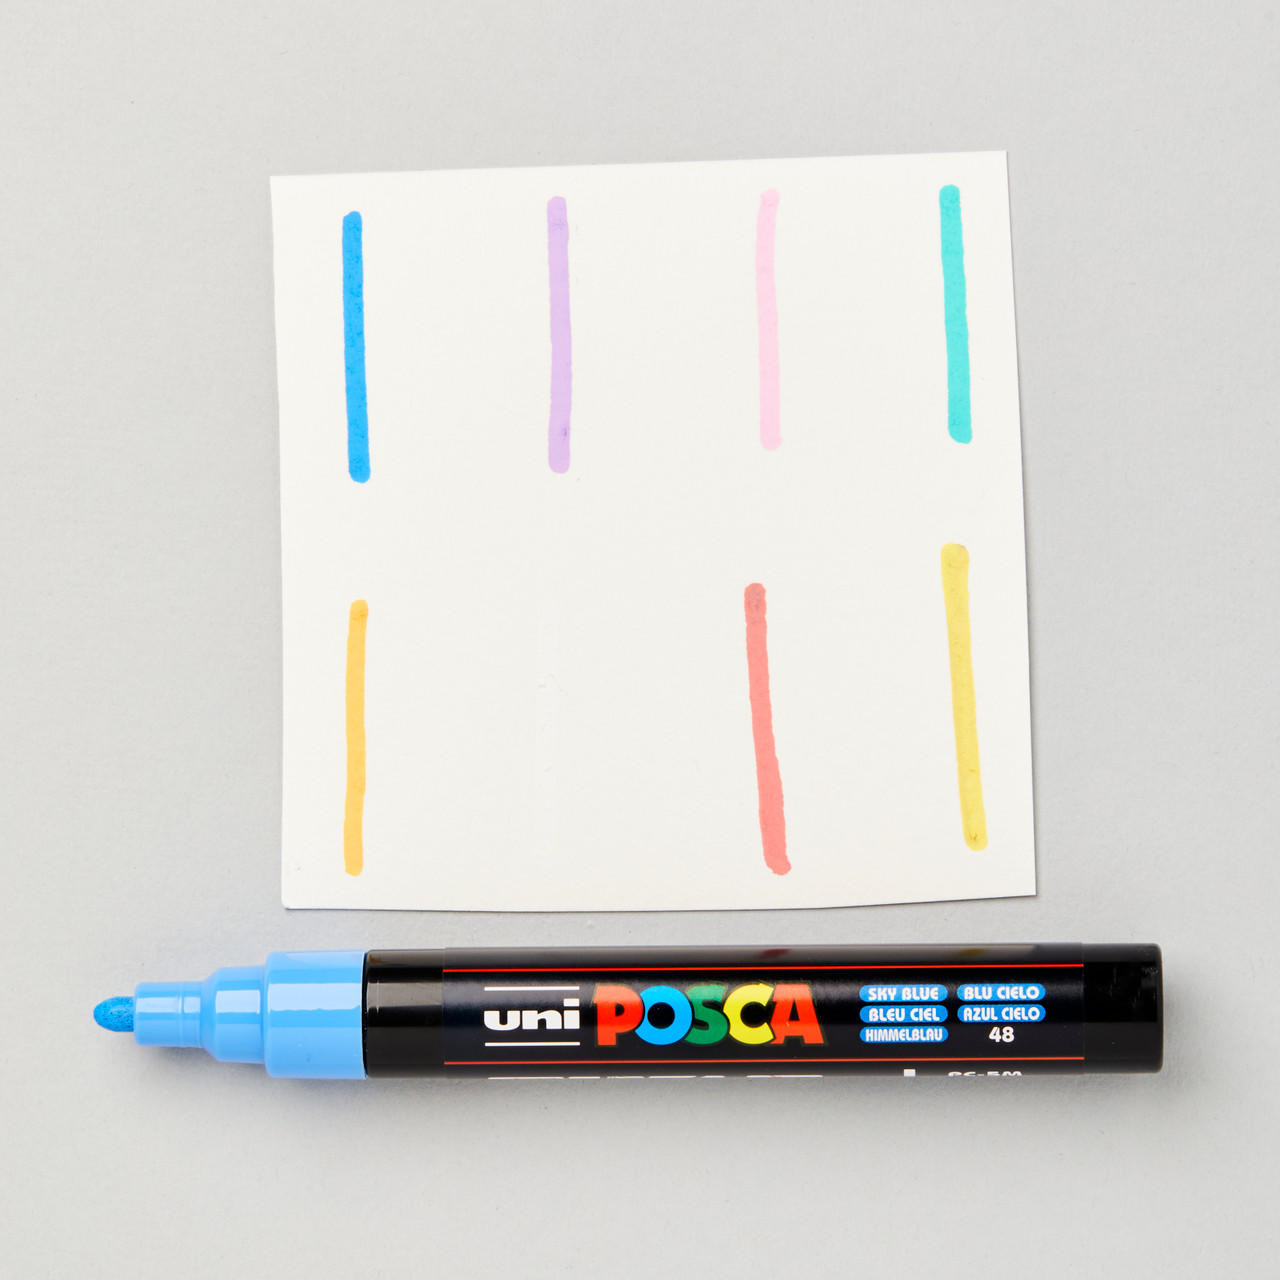 Uni POSCA PC-5M Marker Pen Pastel Colours Set of 8